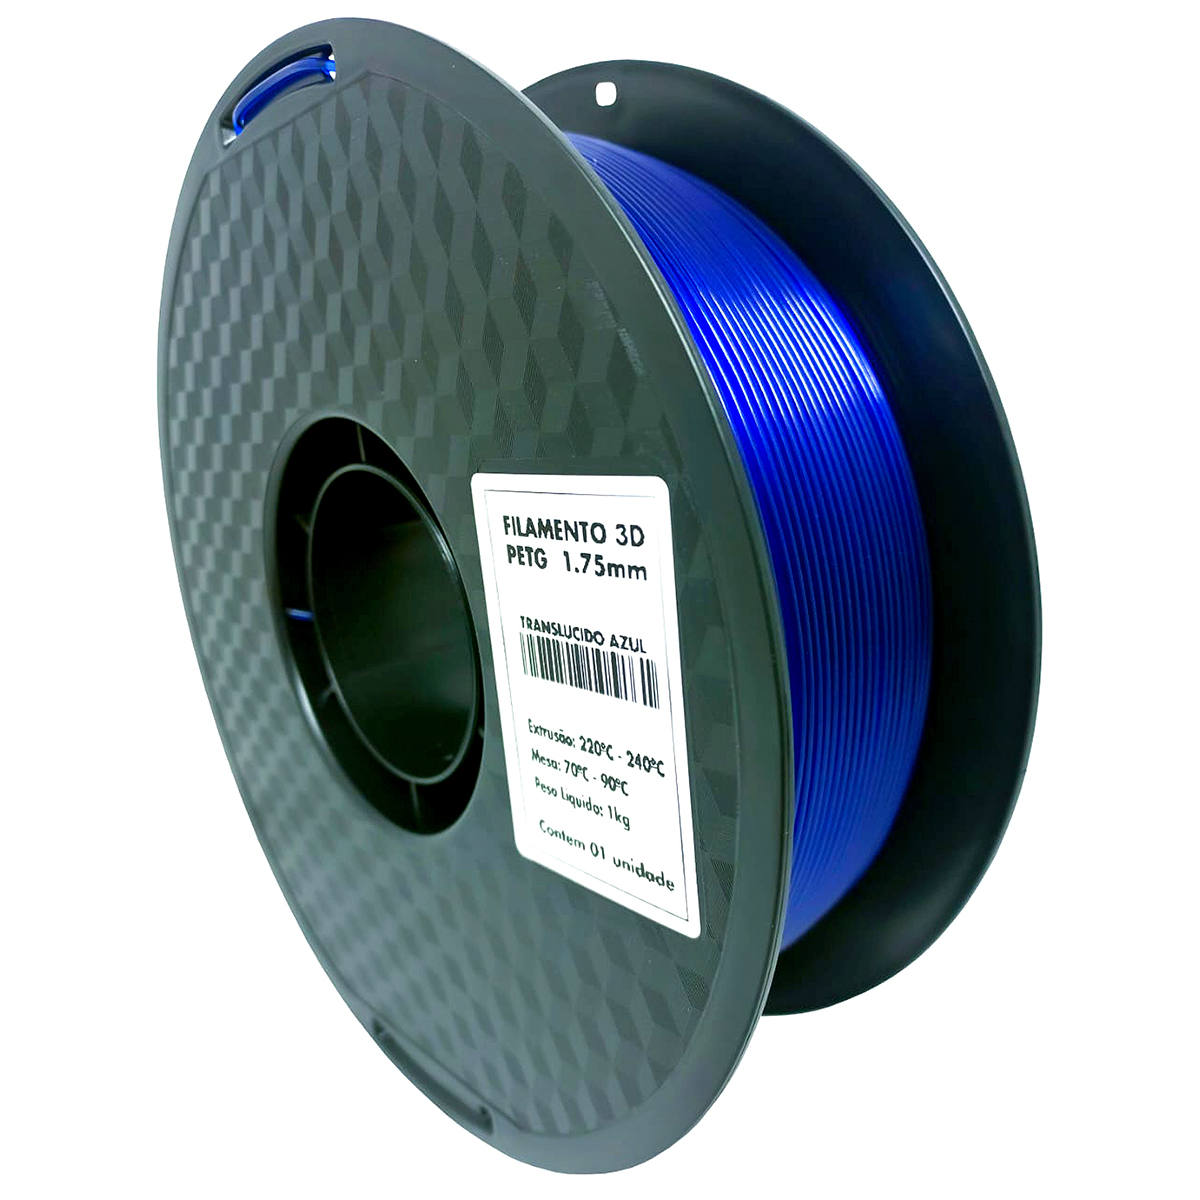 Filamento 3D PETG Azul Translúcido 1.75mm 1KG para Impressora 3D Alta Resistência Bom Acabamento Masterprint